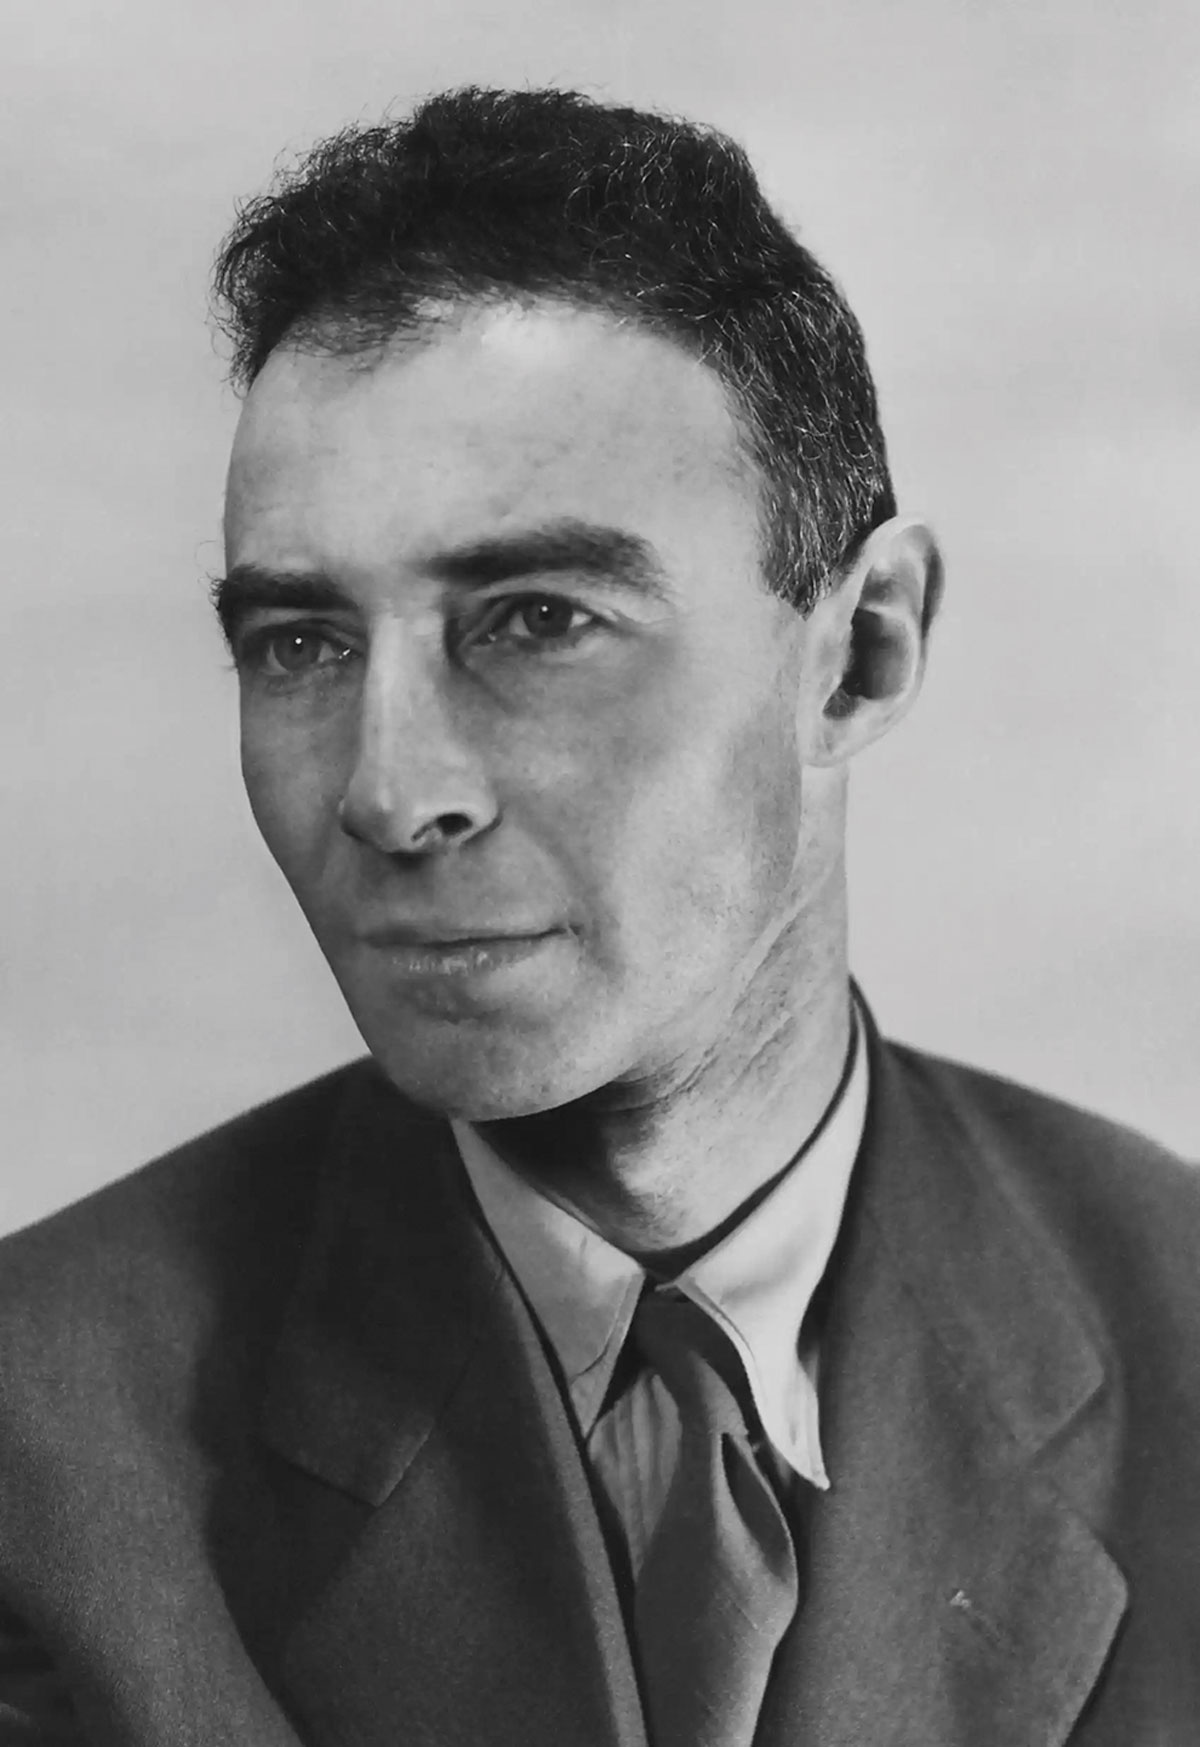 J. Robert Oppenheimer, 1944